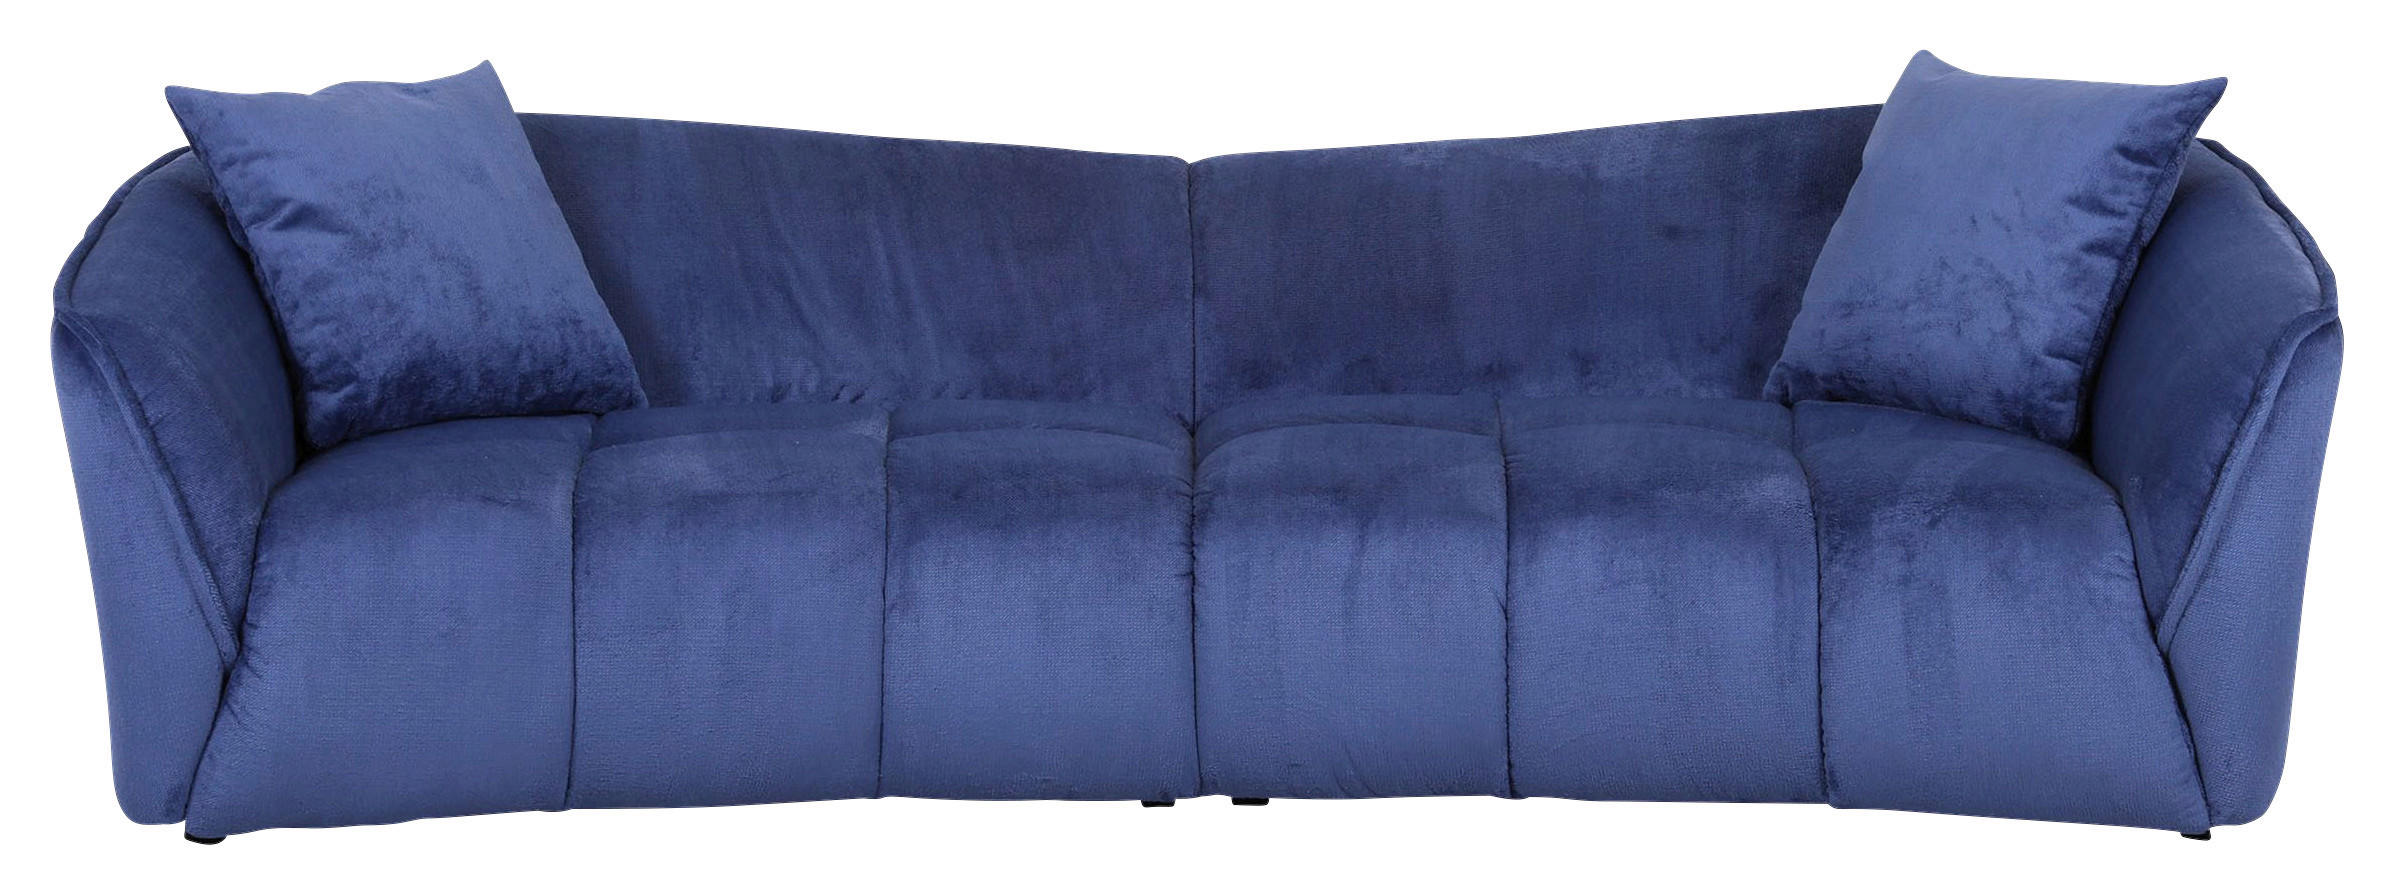 BIGSOFA Plüsch Blau  - Blau/Schwarz, KONVENTIONELL, Kunststoff/Textil (250/75/107cm) - Carryhome